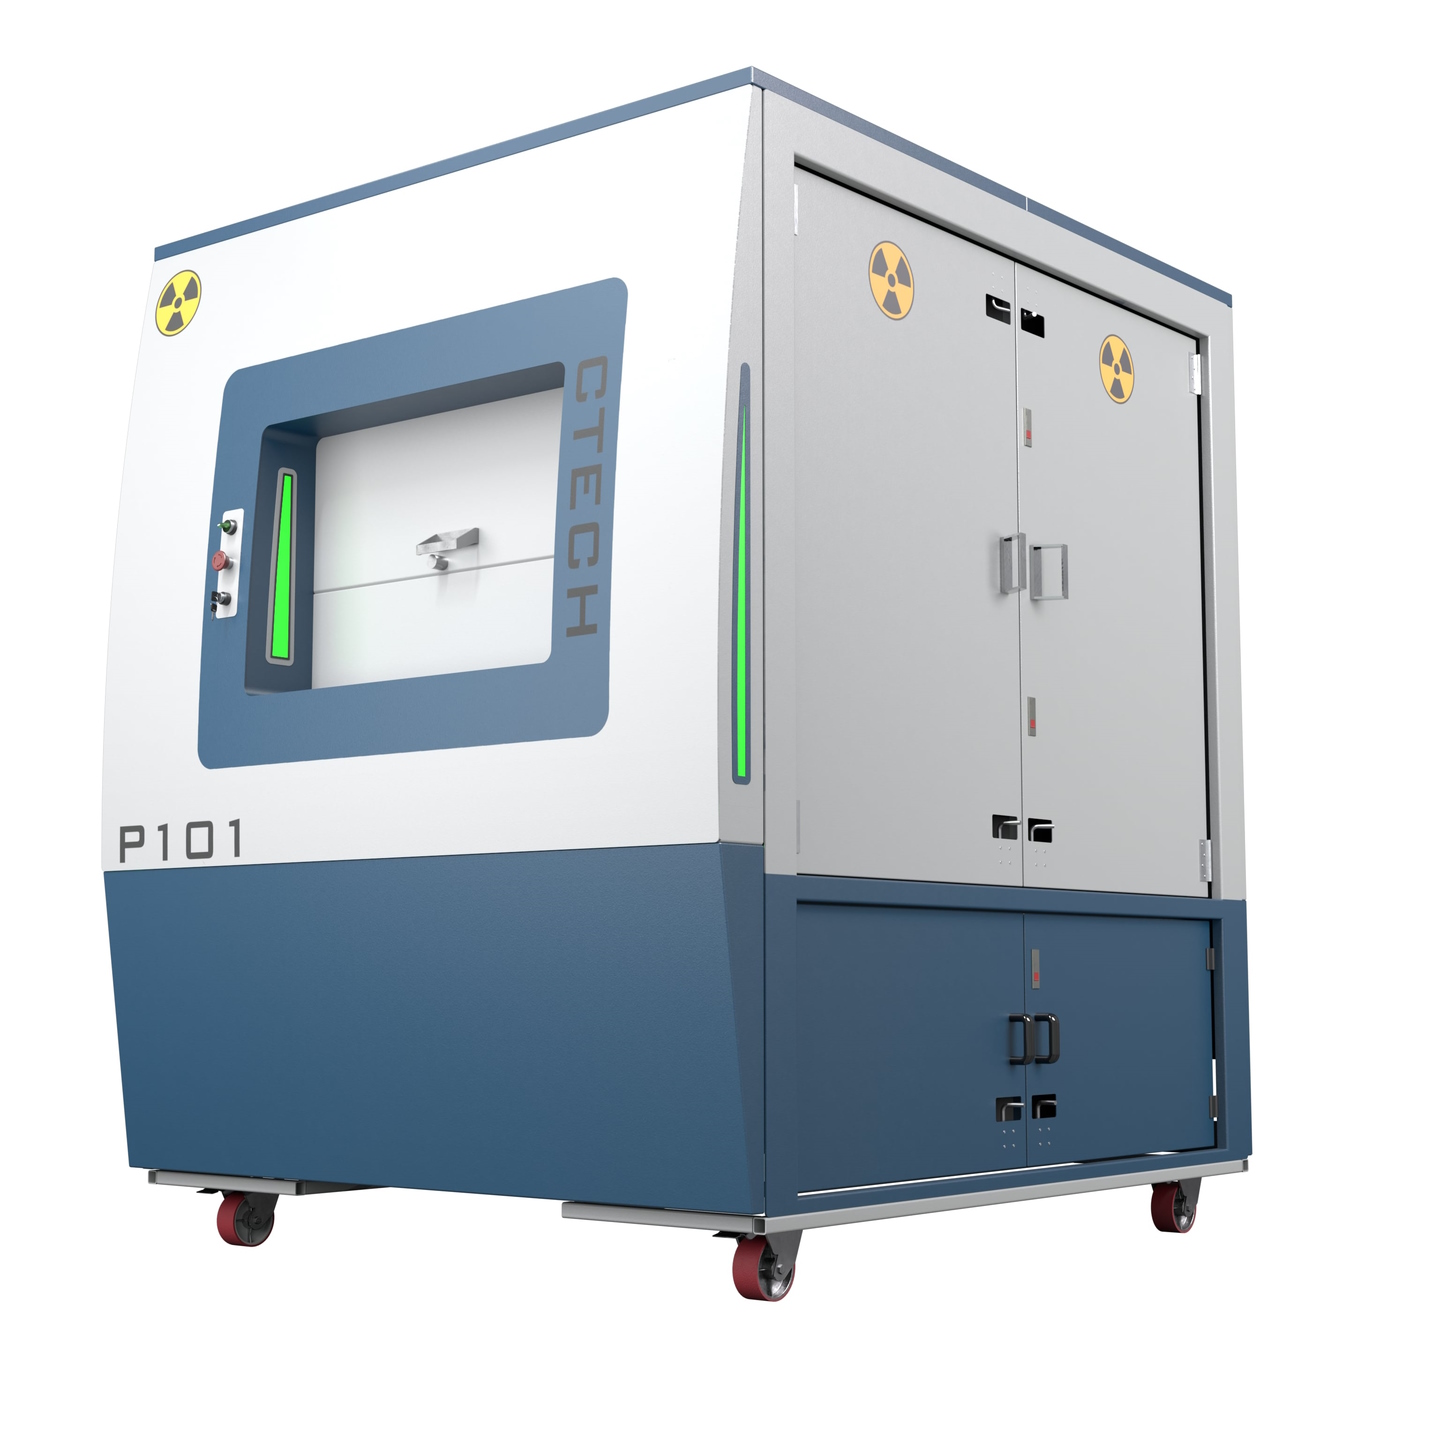 دستگاه بازرسی بردهای مدار چاپی مبتنی بر پرتوی ایکس (X-ray PCB Inspection)